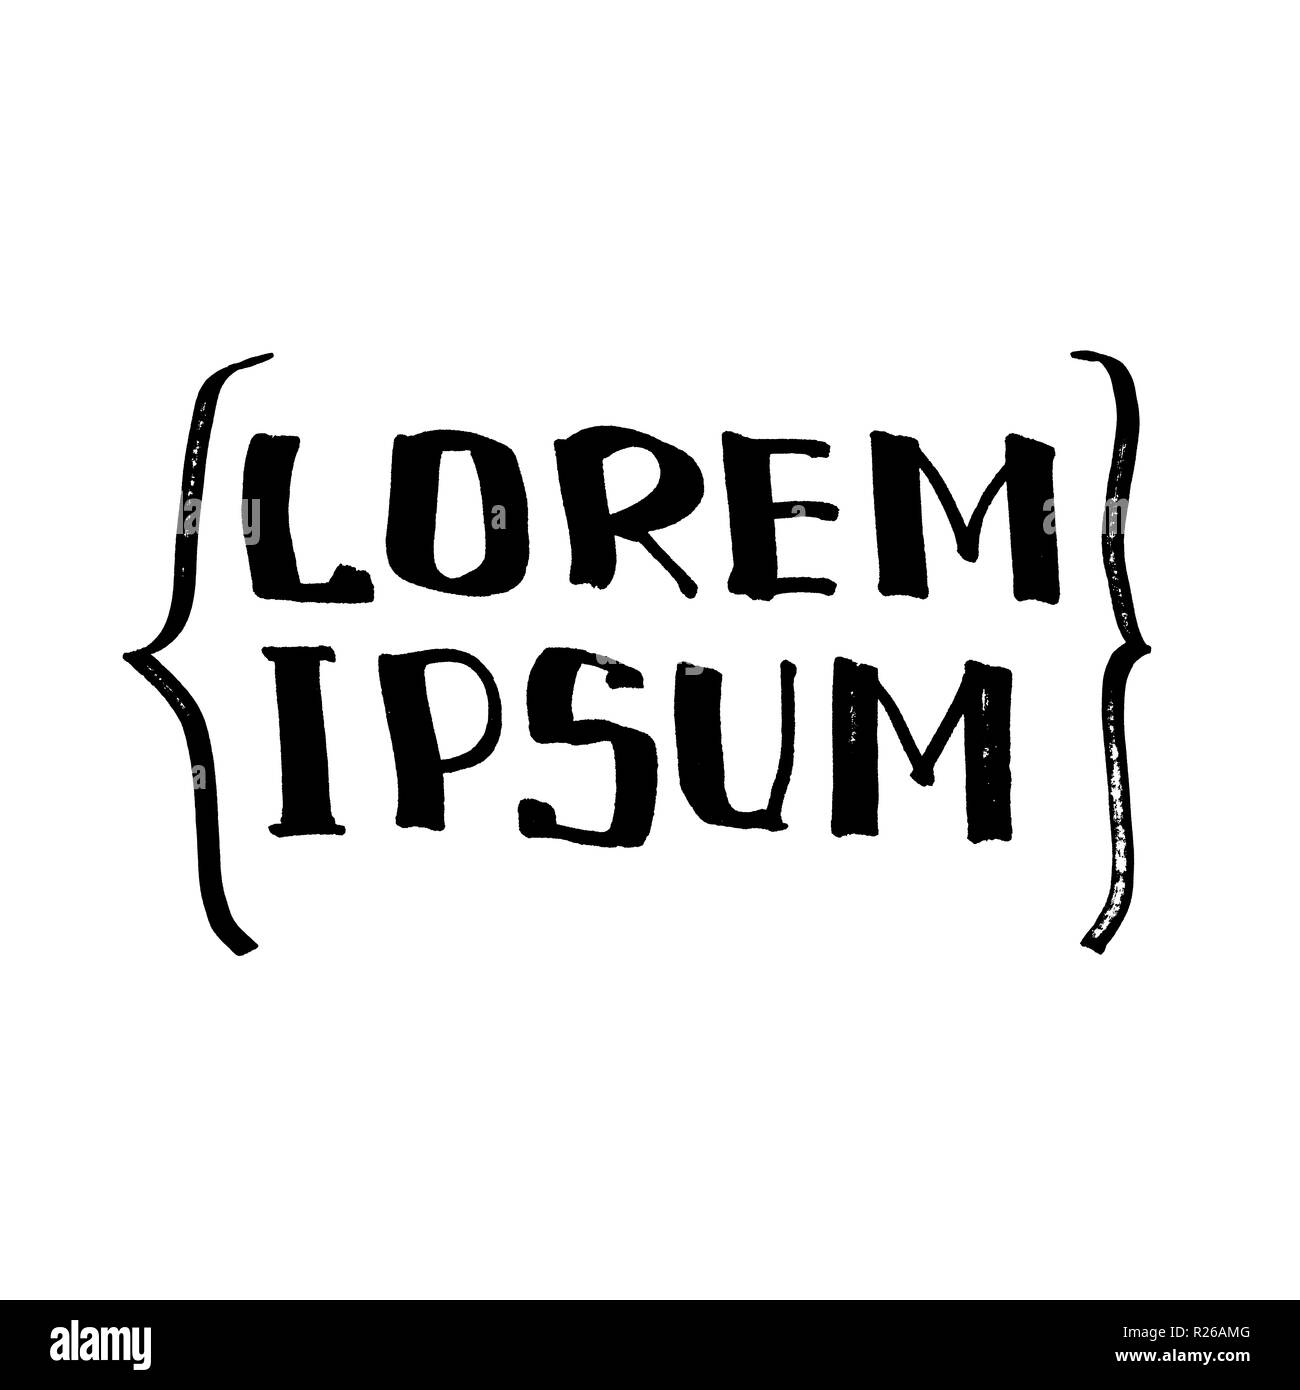 Lorem Ipsum (Échantillon de texte). Lettrage, bande dessinée design pour t-shirt ou poster Banque D'Images